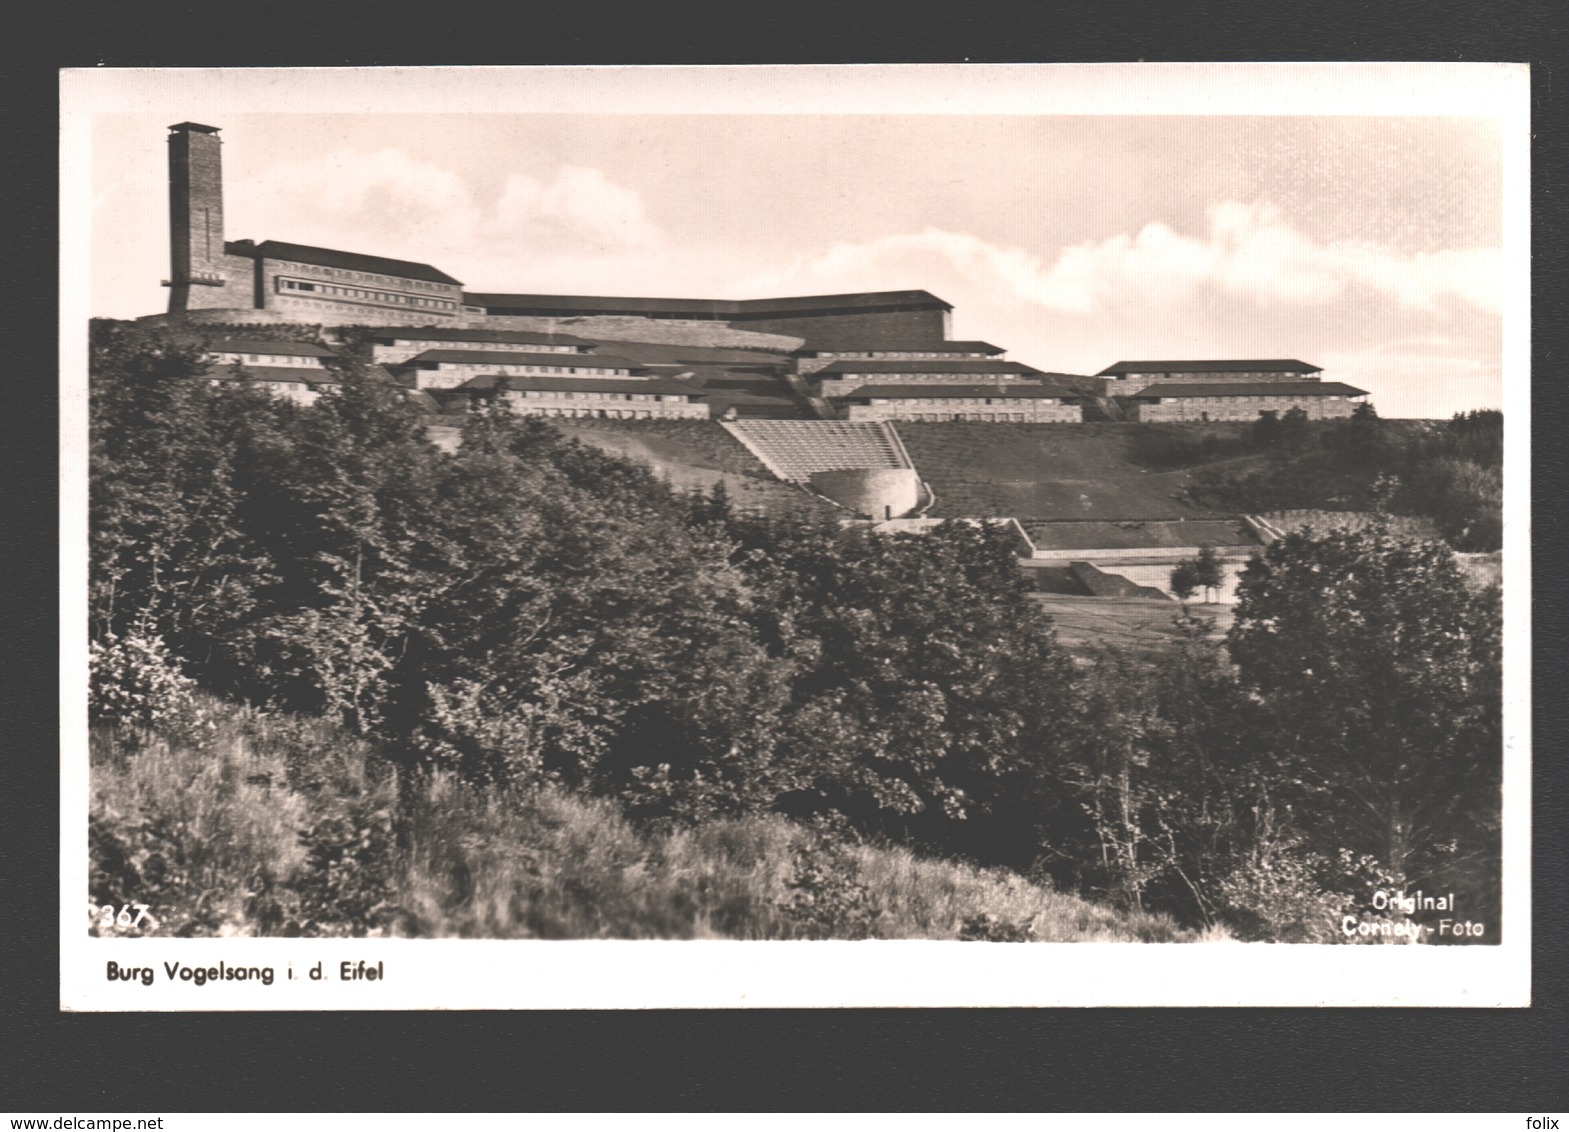 Burg Vogelsang I. D. Eifel - Militärposten / Army Post - 1955 - Schleiden